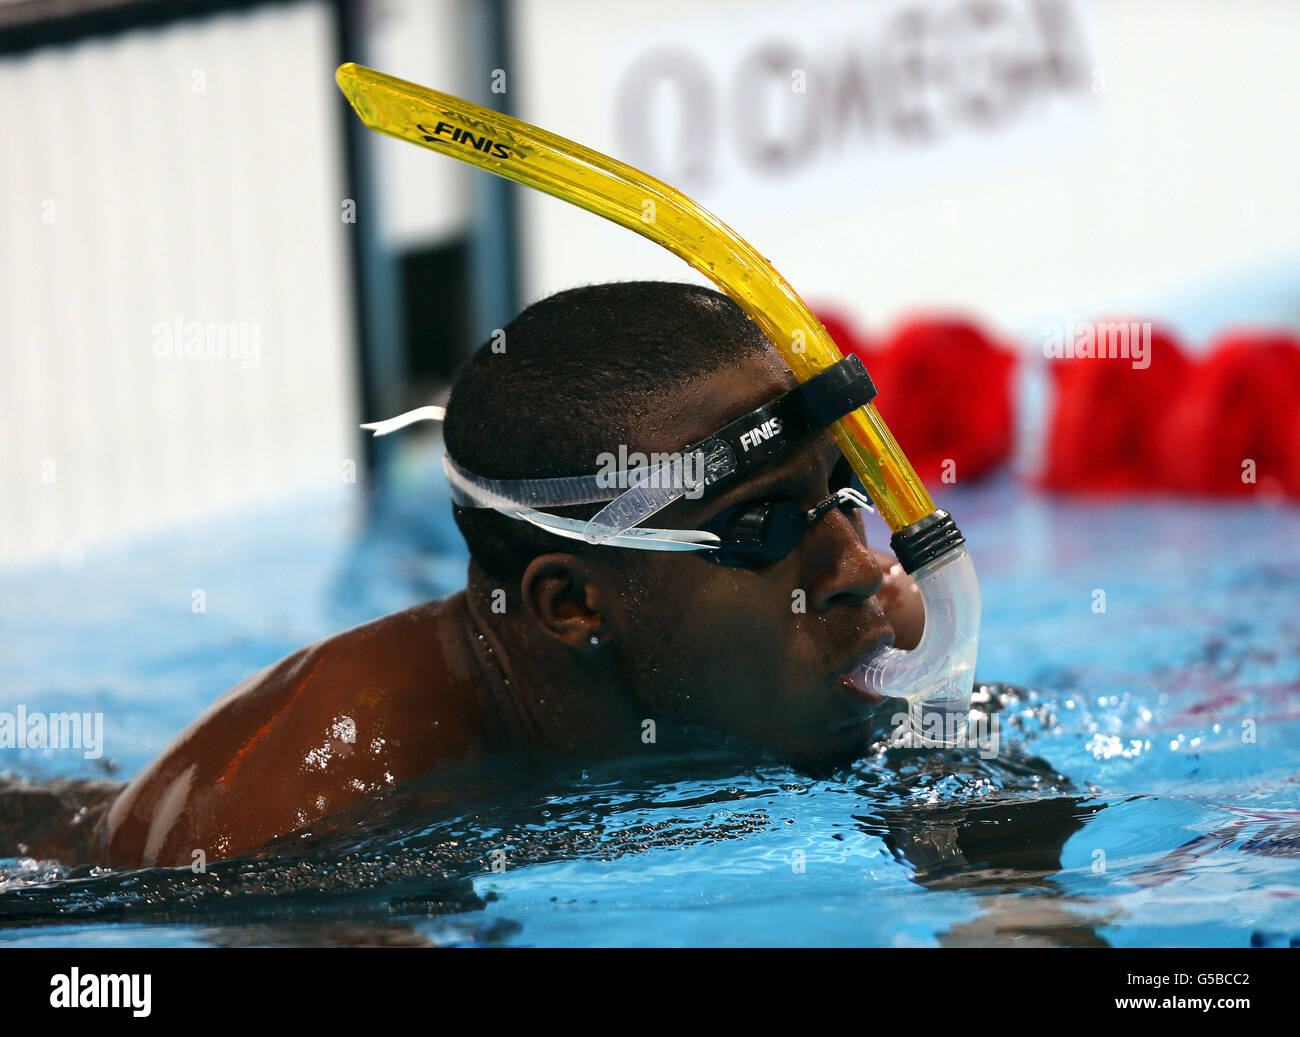 Olympische Spiele In London - Aktivitäten Vor Den Spielen - Mittwoch. Grenada-Schwimmer Esau Simpson während des Schwimmtrainings im Aquatics Centre, London. Stockfoto